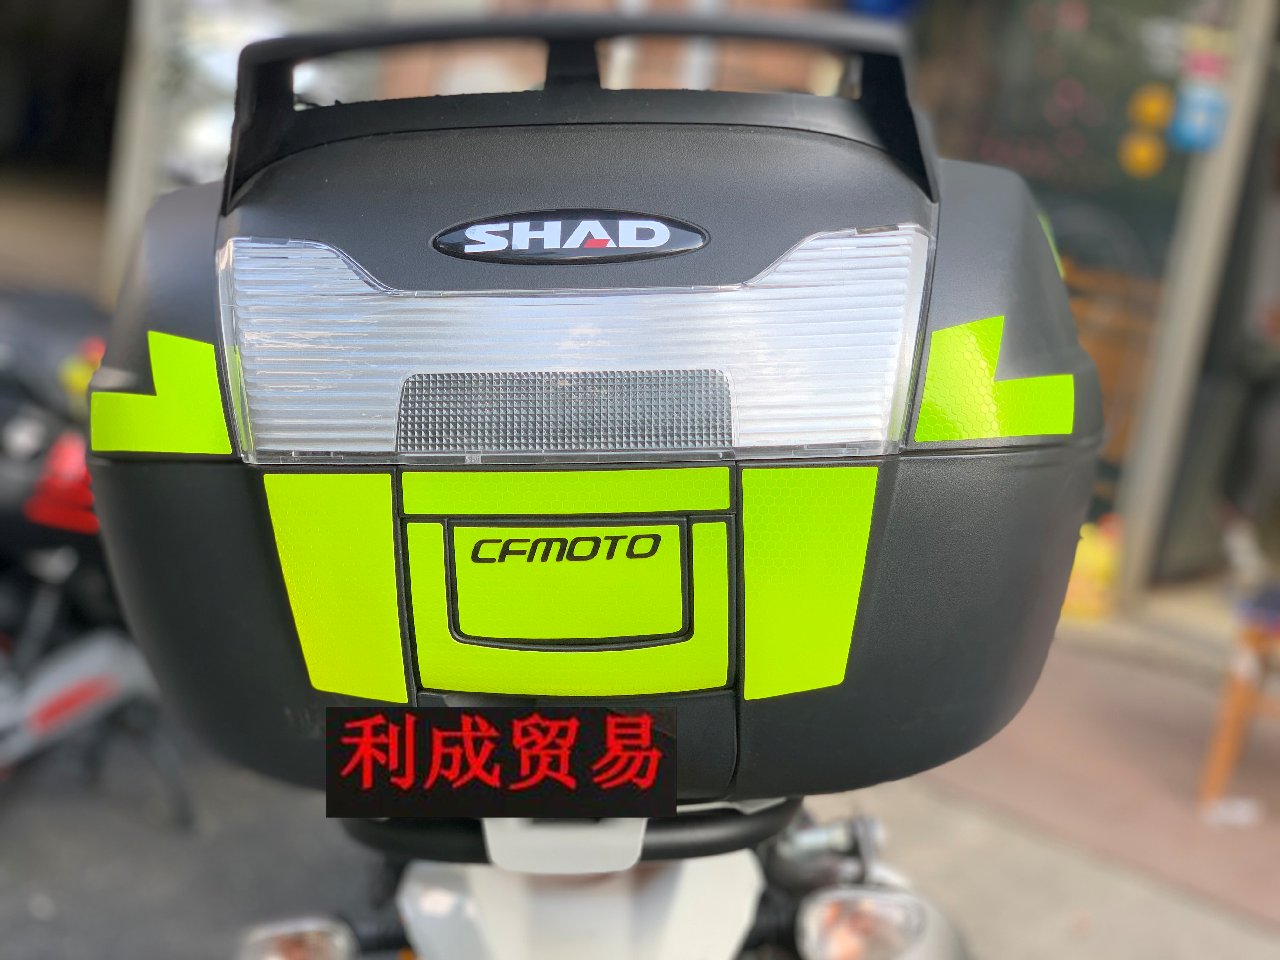 夏德尾箱SH40反光贴花/夜间安全反光标识贴纸/摩托车LOGO可定制